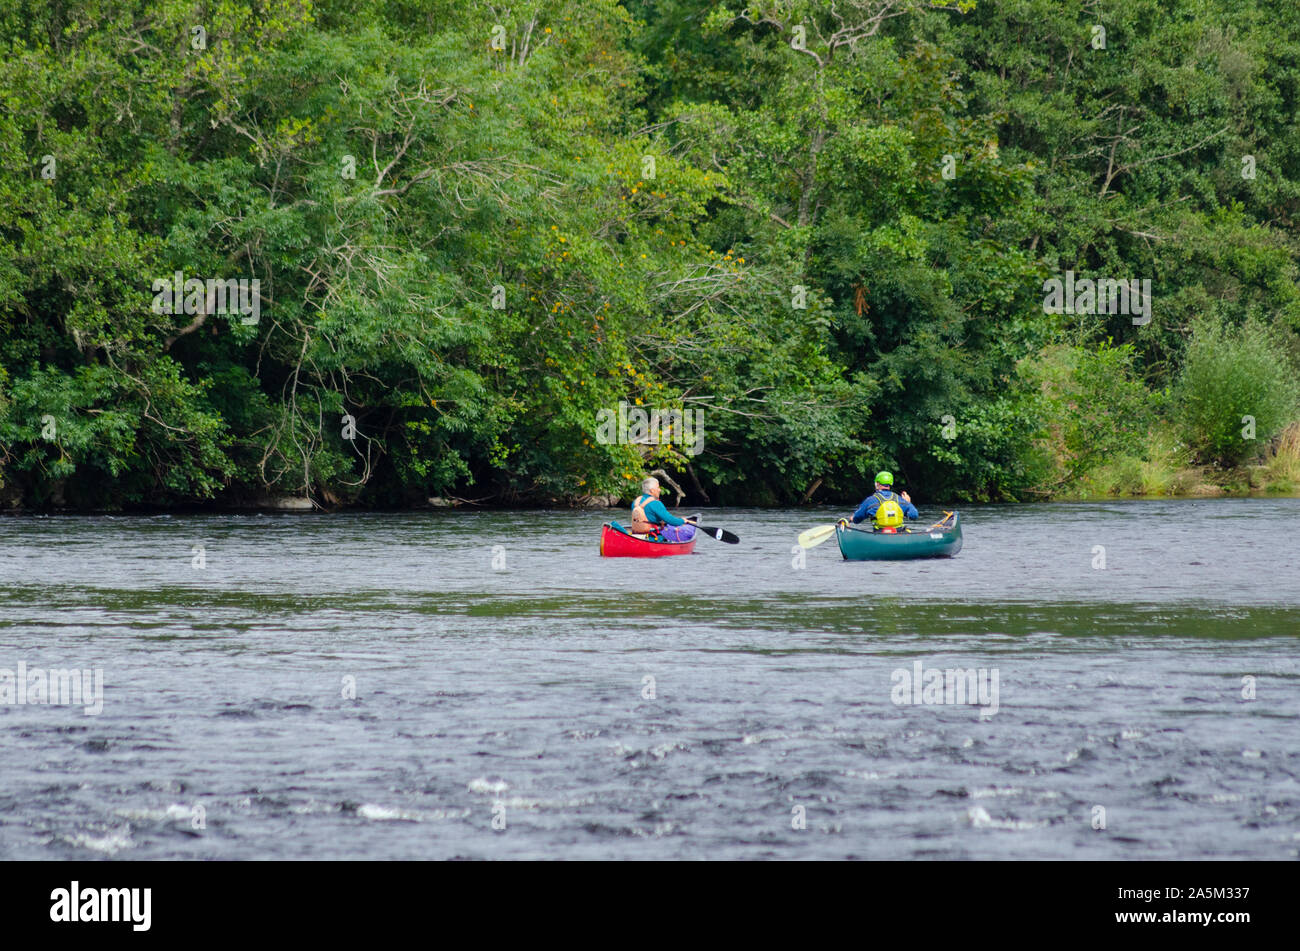 La gente en canoa por el río Tay, cerca de Pitlochry Perthshire Escocia UK Foto de stock